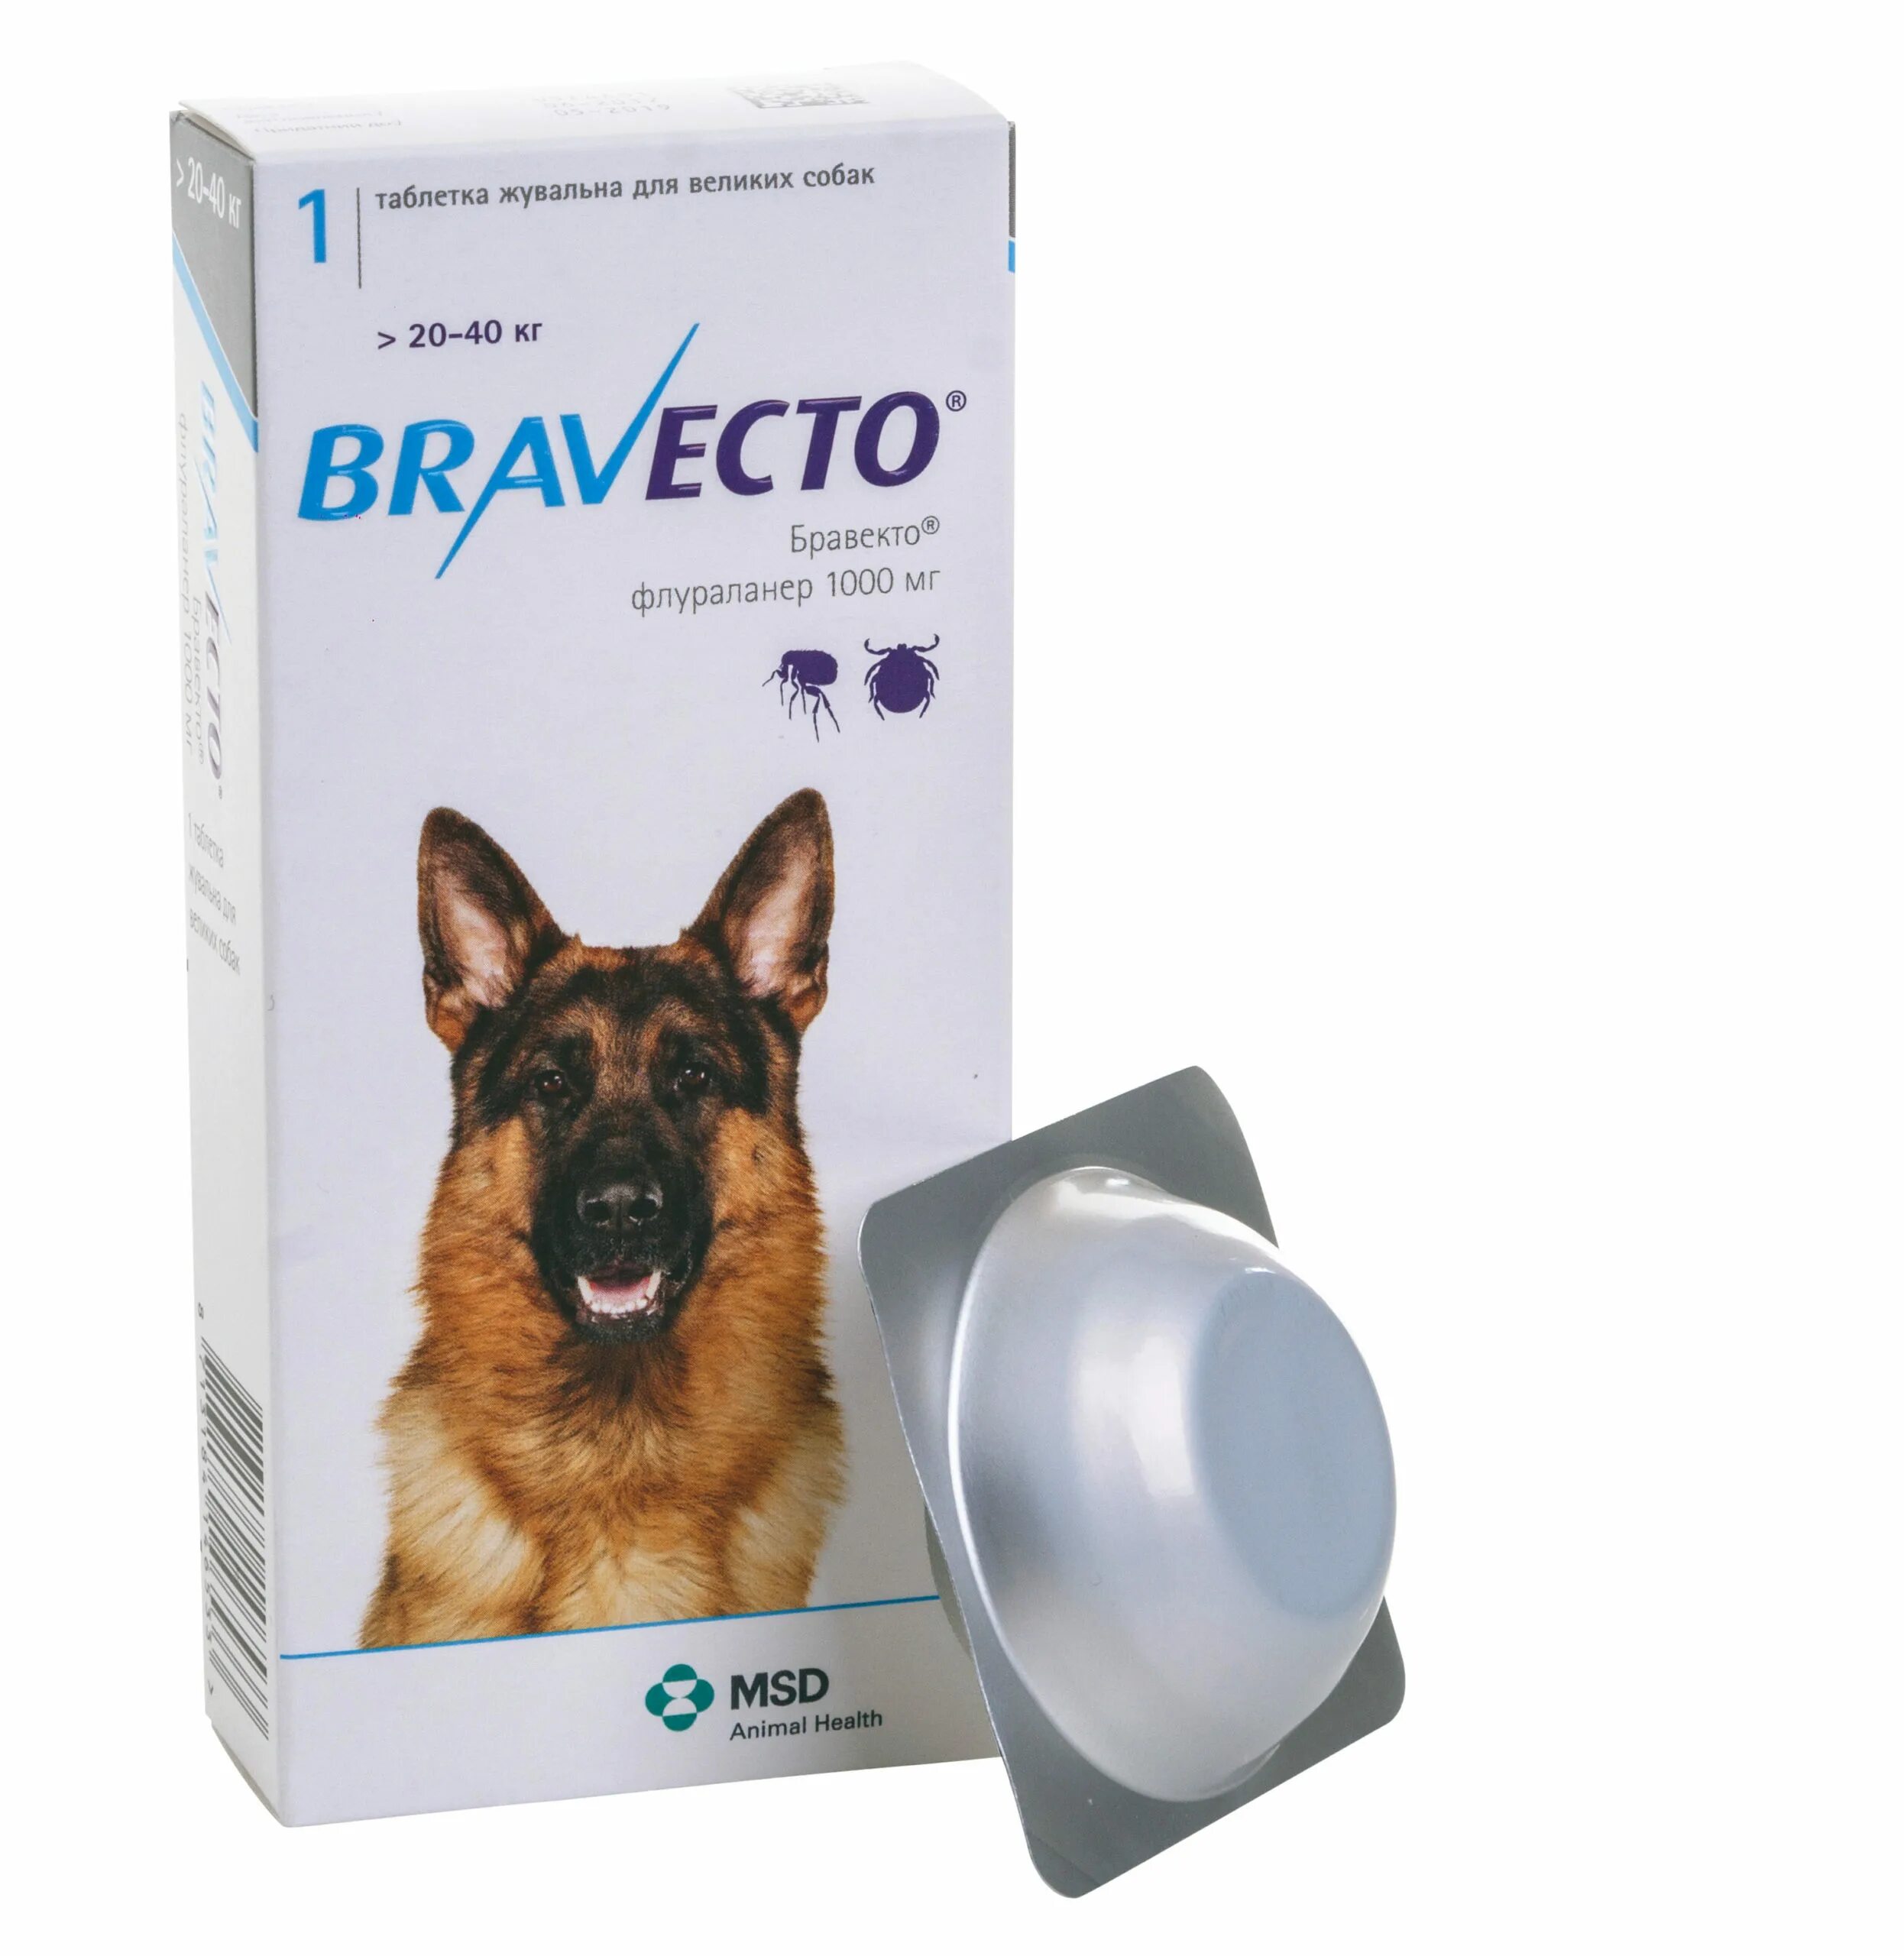 Где купить таблетки от клещей. Таблетки от блох и клещей для собак Бравекто. Бравекто для собак 20-40 кг таблетки. Бравекто (Bravecto) 20-40 кг, таблетка 1000 мг. Бравекто 112.5 мг Флураланер.